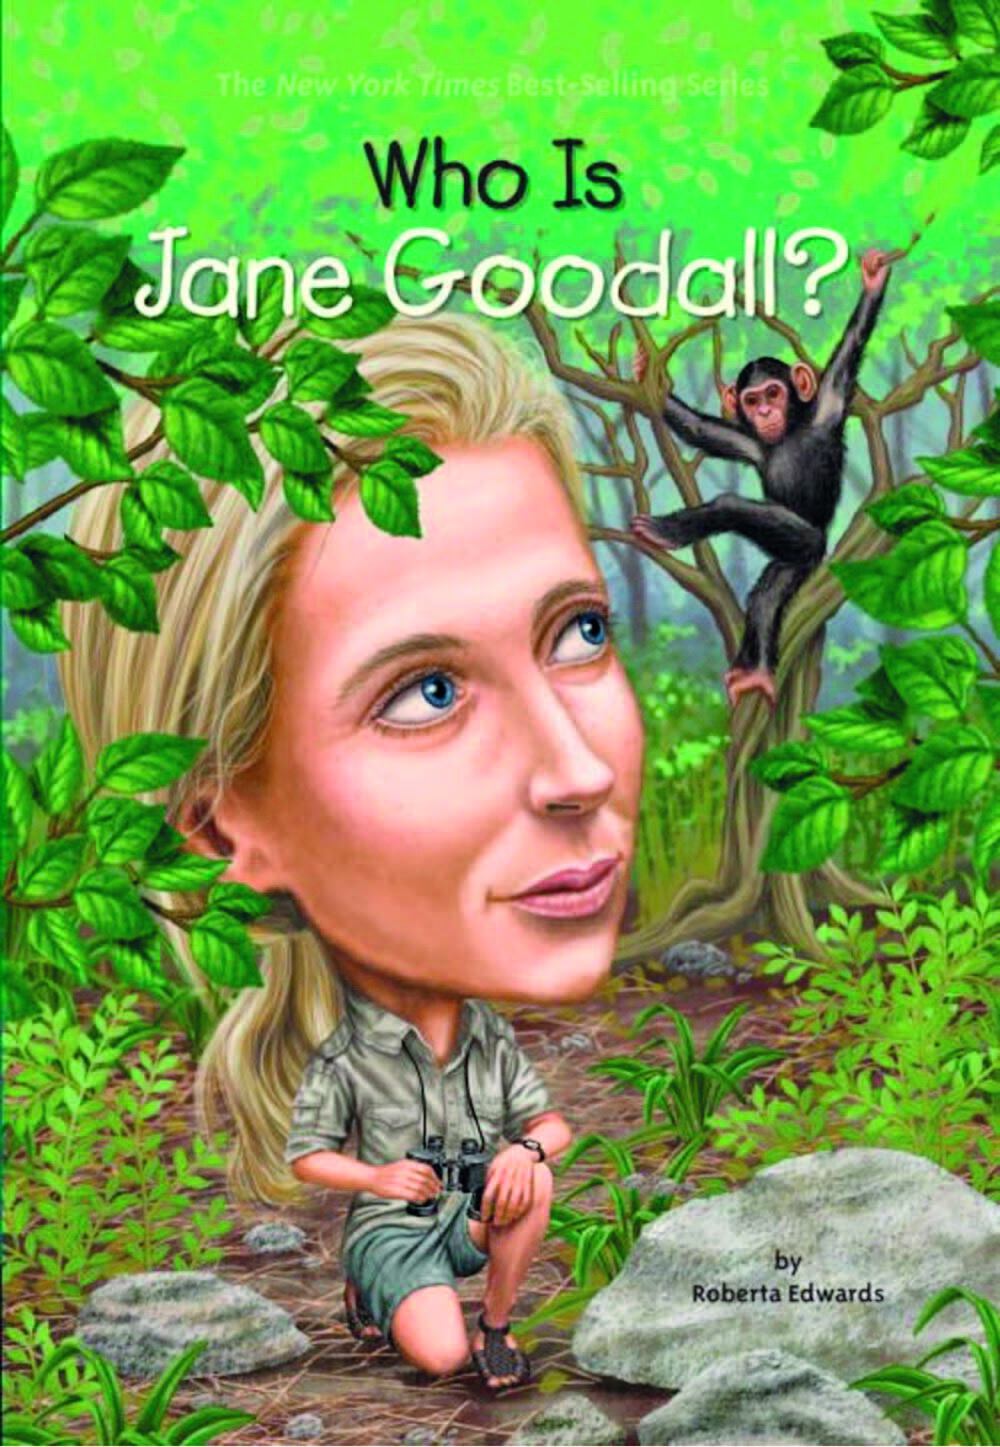 Capa de livro. Na parte superior, lê-se o título: WHO IS JANE GOODALL? Abaixo, há uma ilustração de Jane Goodall, uma mulher loira, de sobrancelhas finas, usando camisa verde, shorts e tênis; ela está no meio da mata e olha na direção de um gorila marrom no topo de uma árvore.